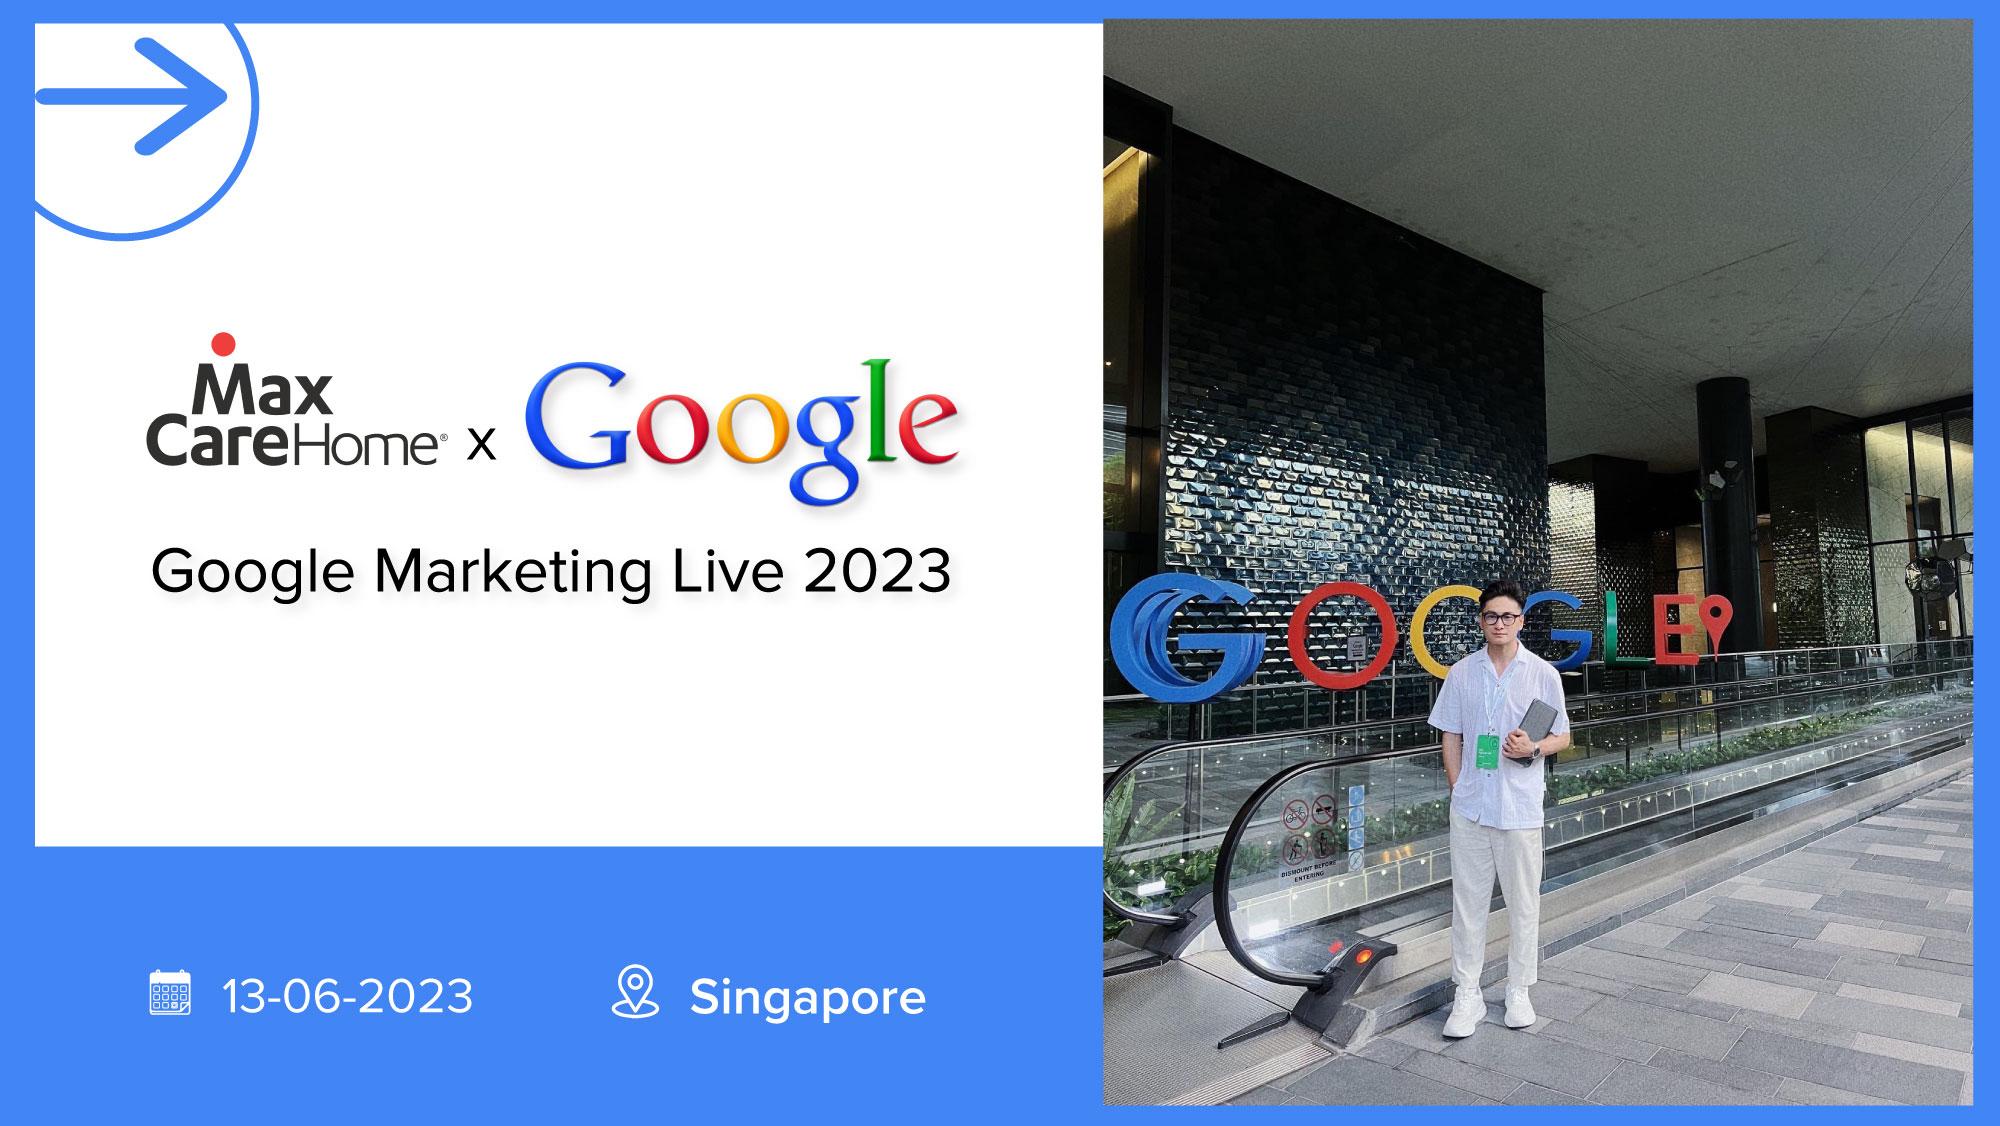 Maxcare-Home-tham du-google-marketing-live